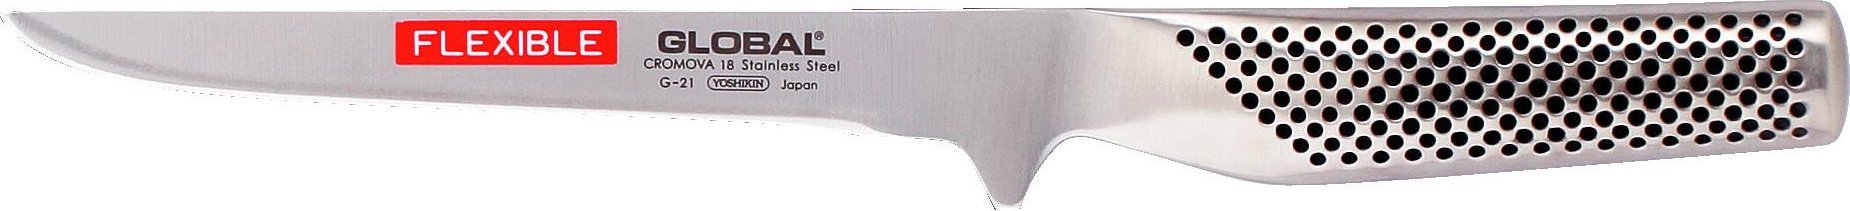 Global - 6.5" Flexible Boning Knife - G21